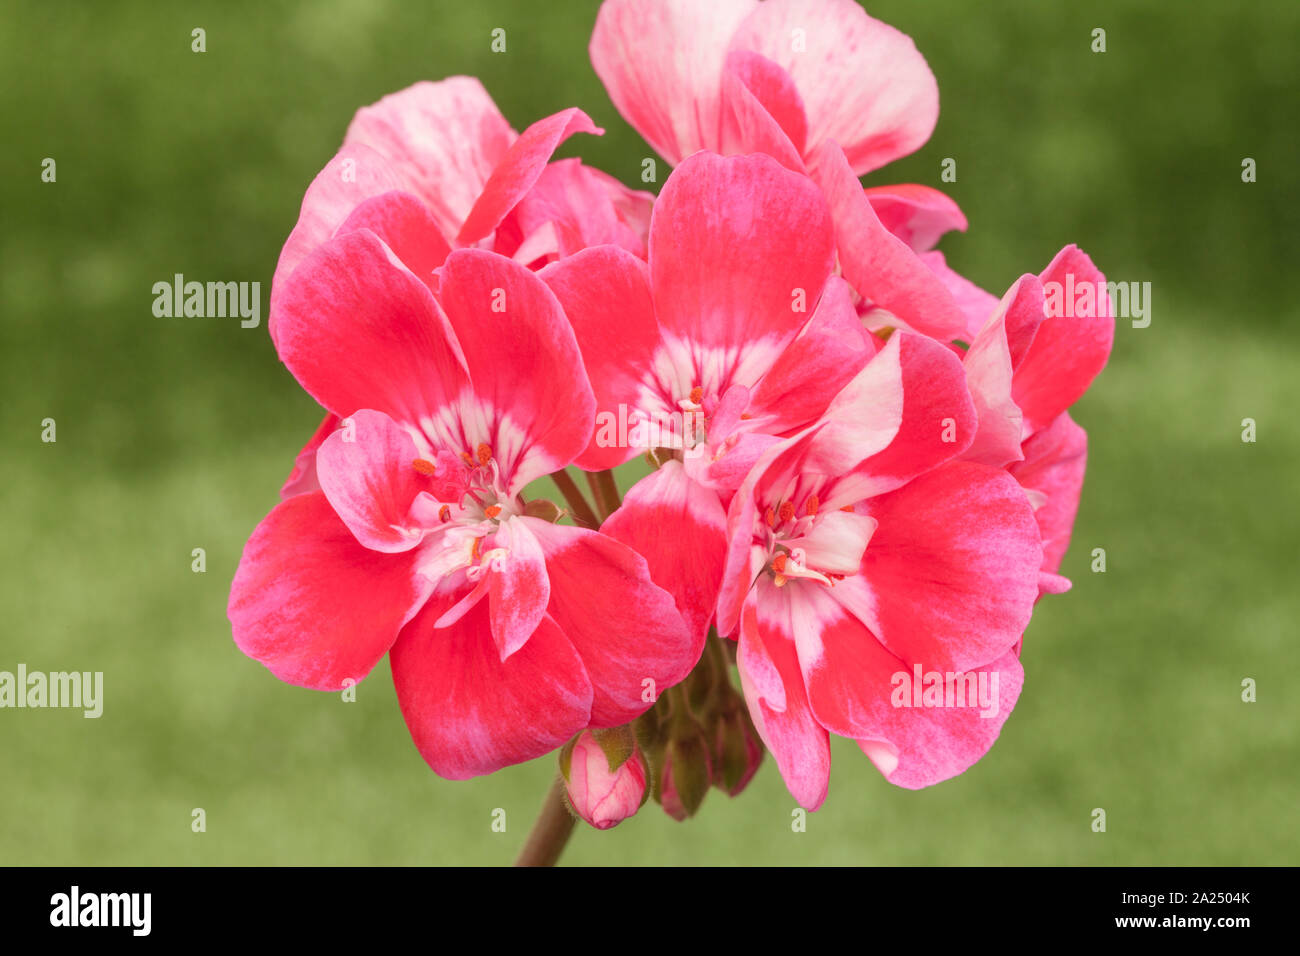 Ropa de cama flores de colores fotografías e imágenes de alta resolución -  Página 3 - Alamy